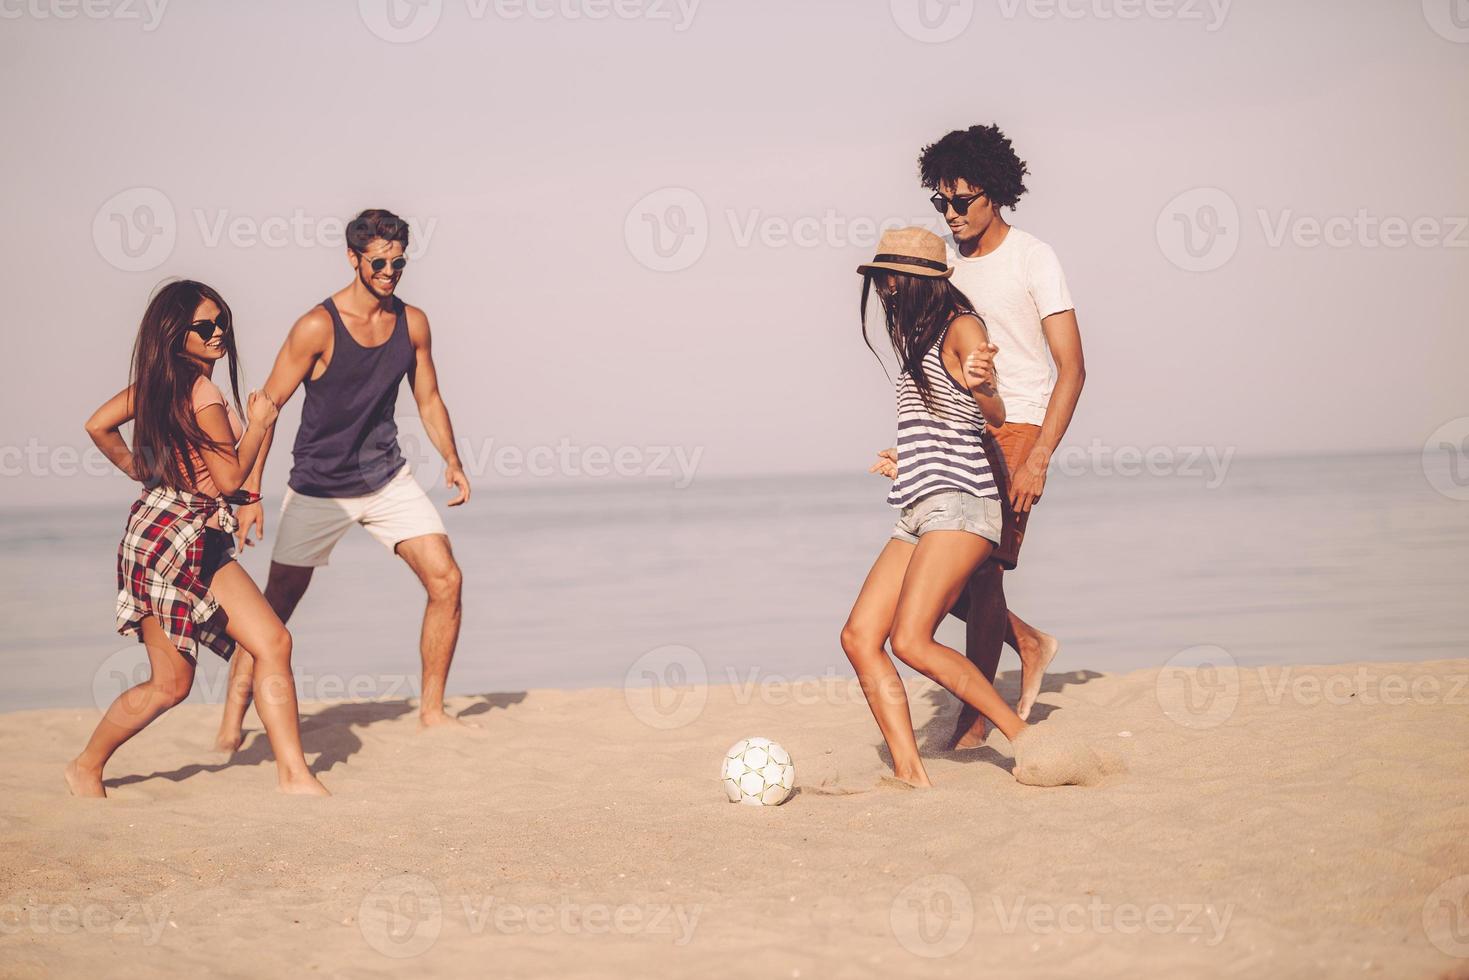 Strandspaß mit Freunden. gruppe fröhlicher junger leute, die mit fußball am strand mit meer im hintergrund spielen foto